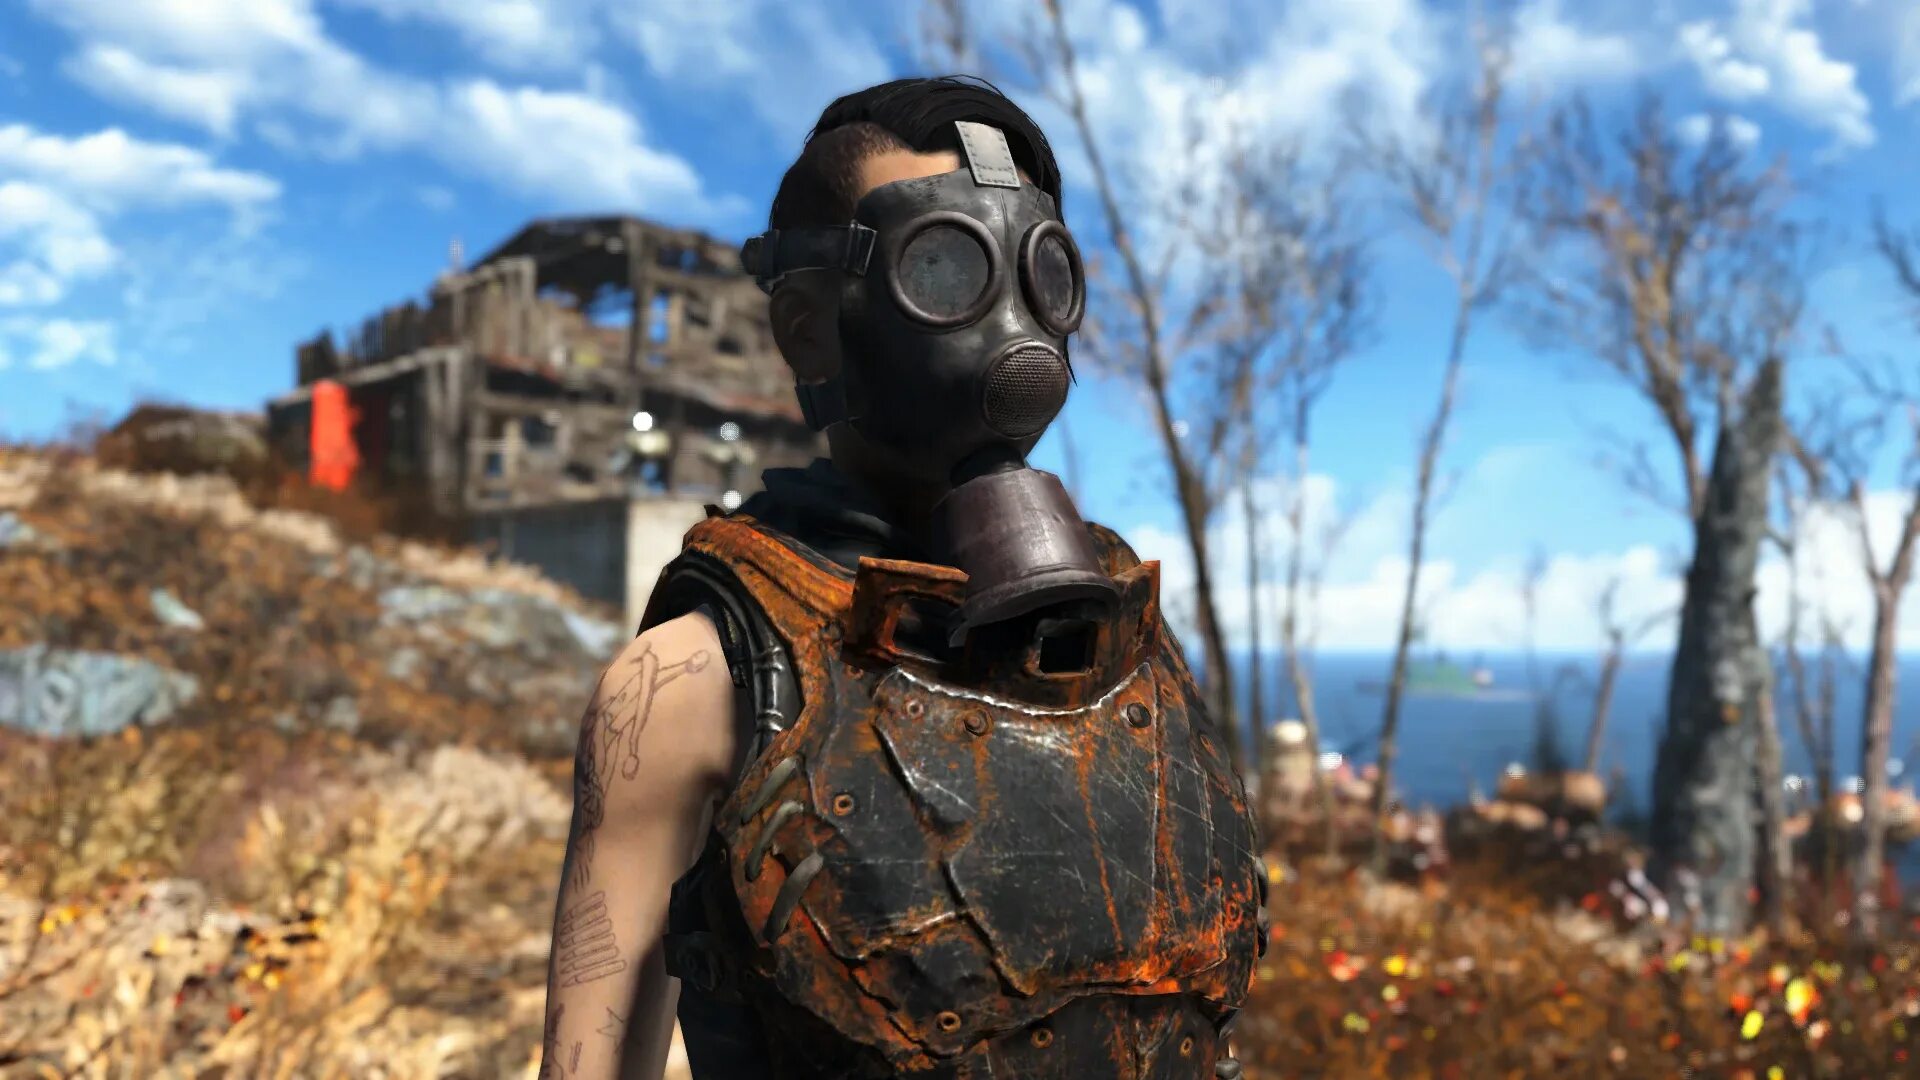 Fallout 4 Gas Mask. Противогаз фоллаут 4. Маска фоллаут. Фоллаут противогаз. Лицо в противогазе